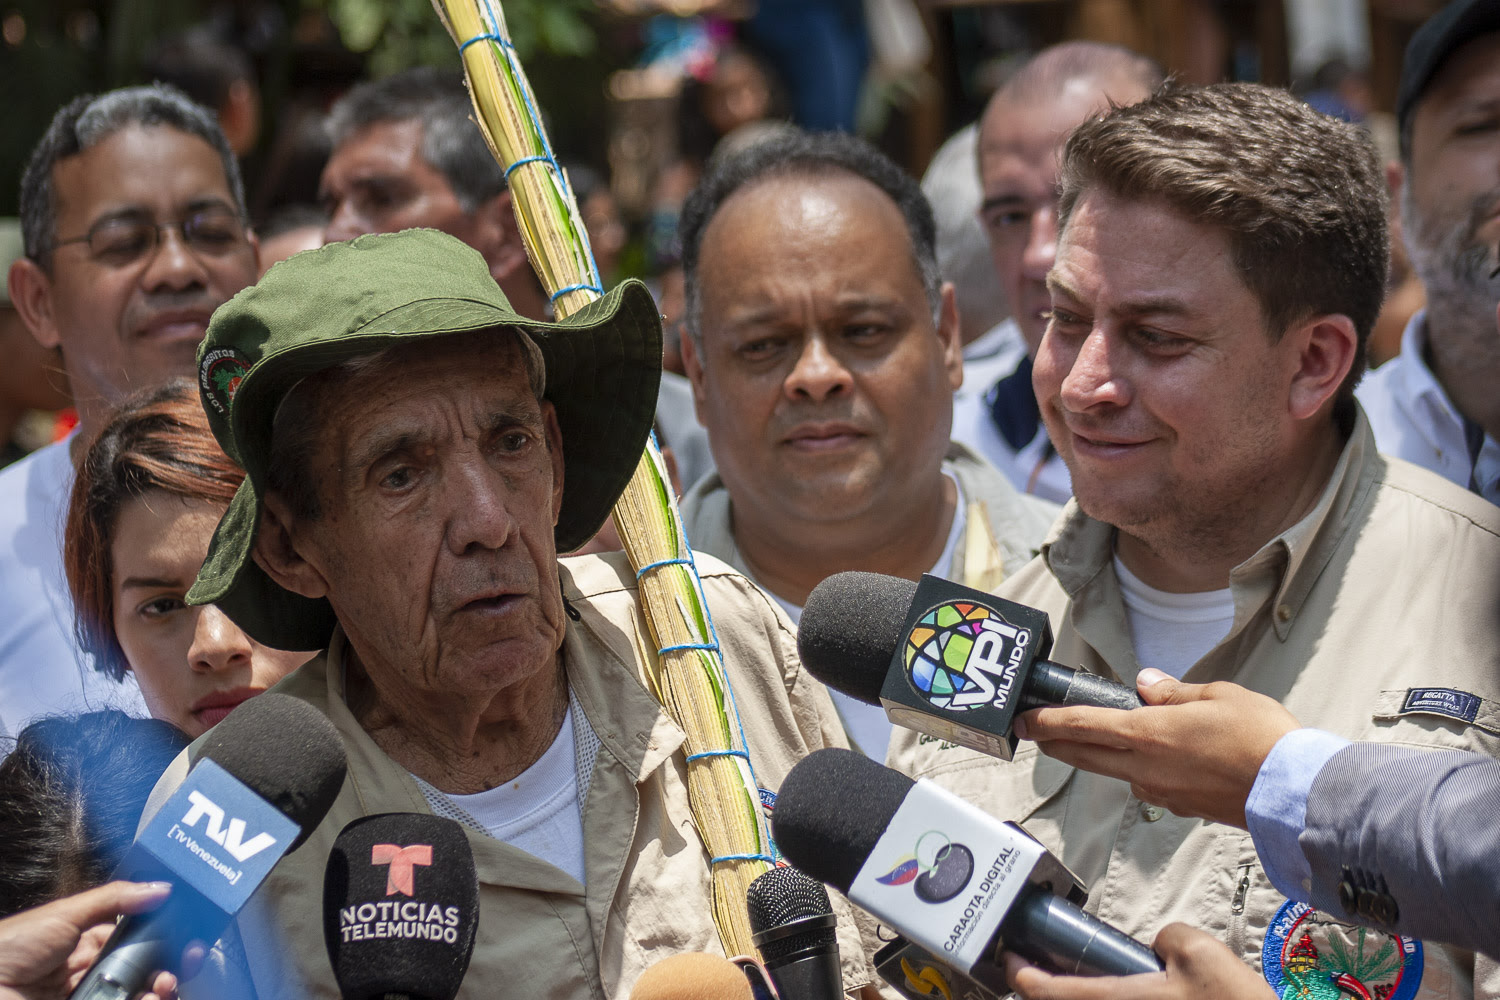 Palmero Mayor de Chacao: Con esta palma se acaba la maldad en Venezuela